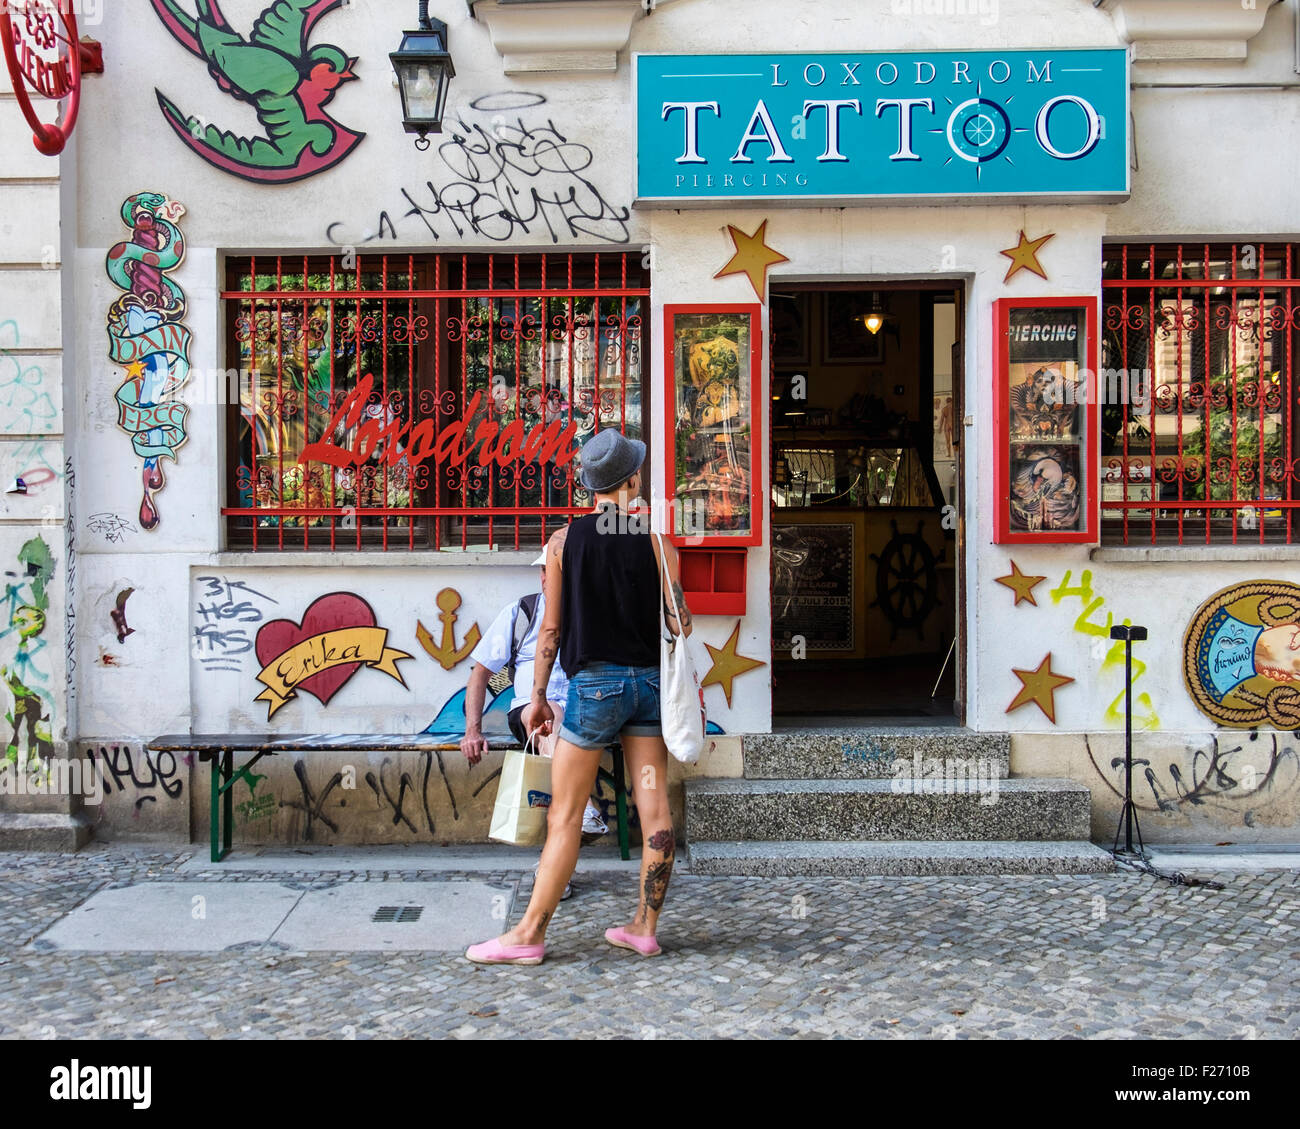 Loxodrom salotto tattoo, shop esterno con vernice colorata e tatuati giovane uomo cercando nella finestra, Kastanienallee, Berlino Foto Stock